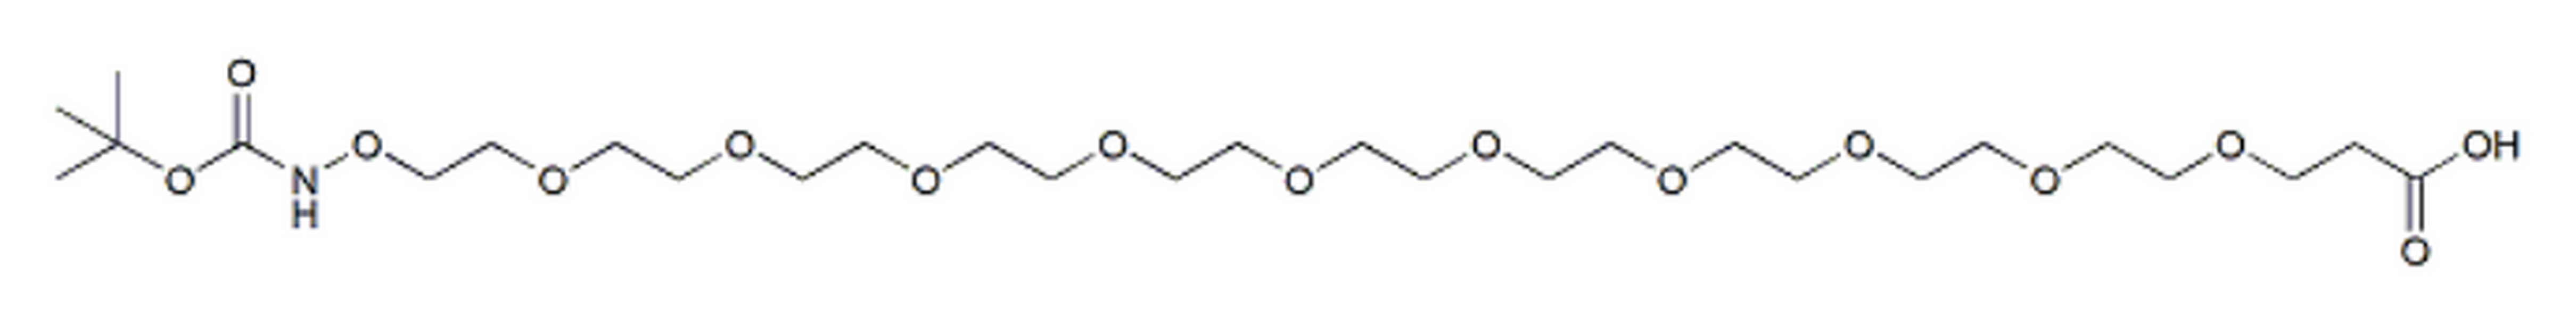 t-Boc-Aminooxy-PEG10-acid